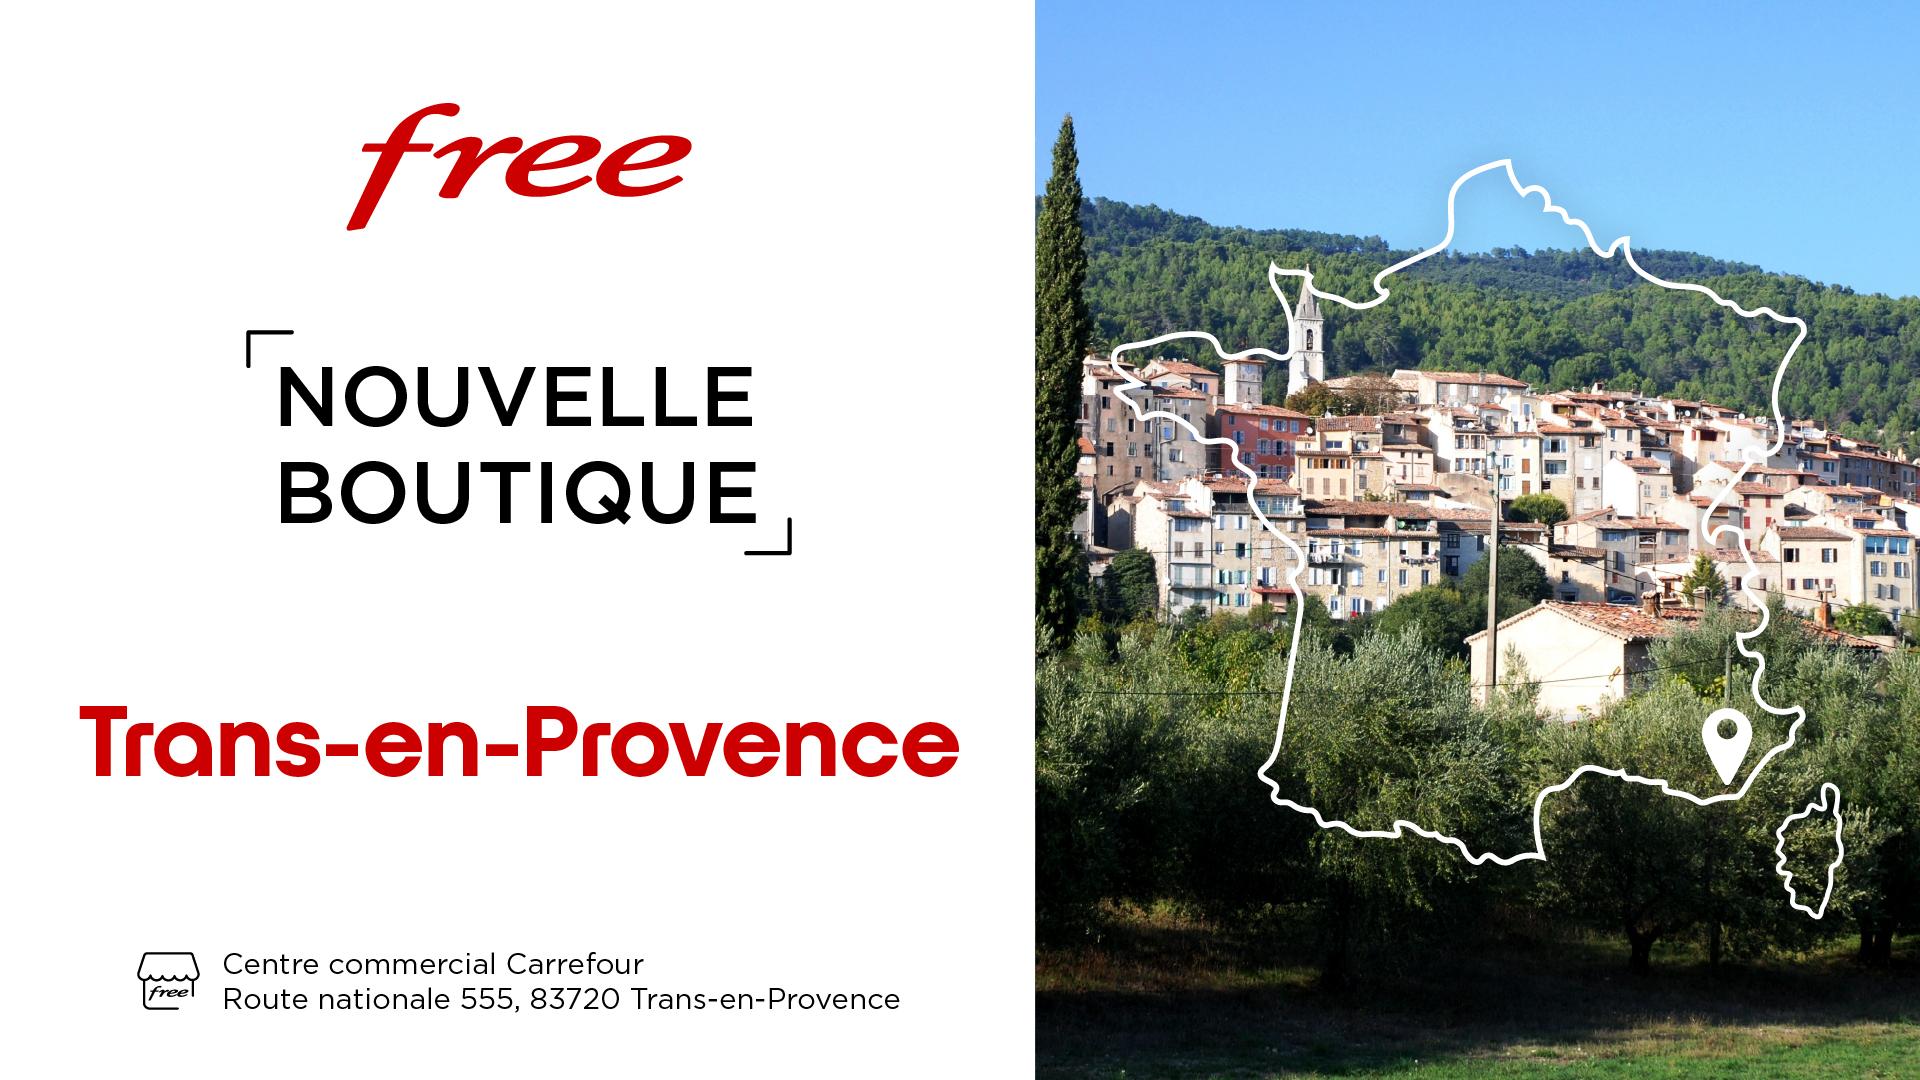 Découvrez la nouvelle boutique Free de Trans-en-Provence